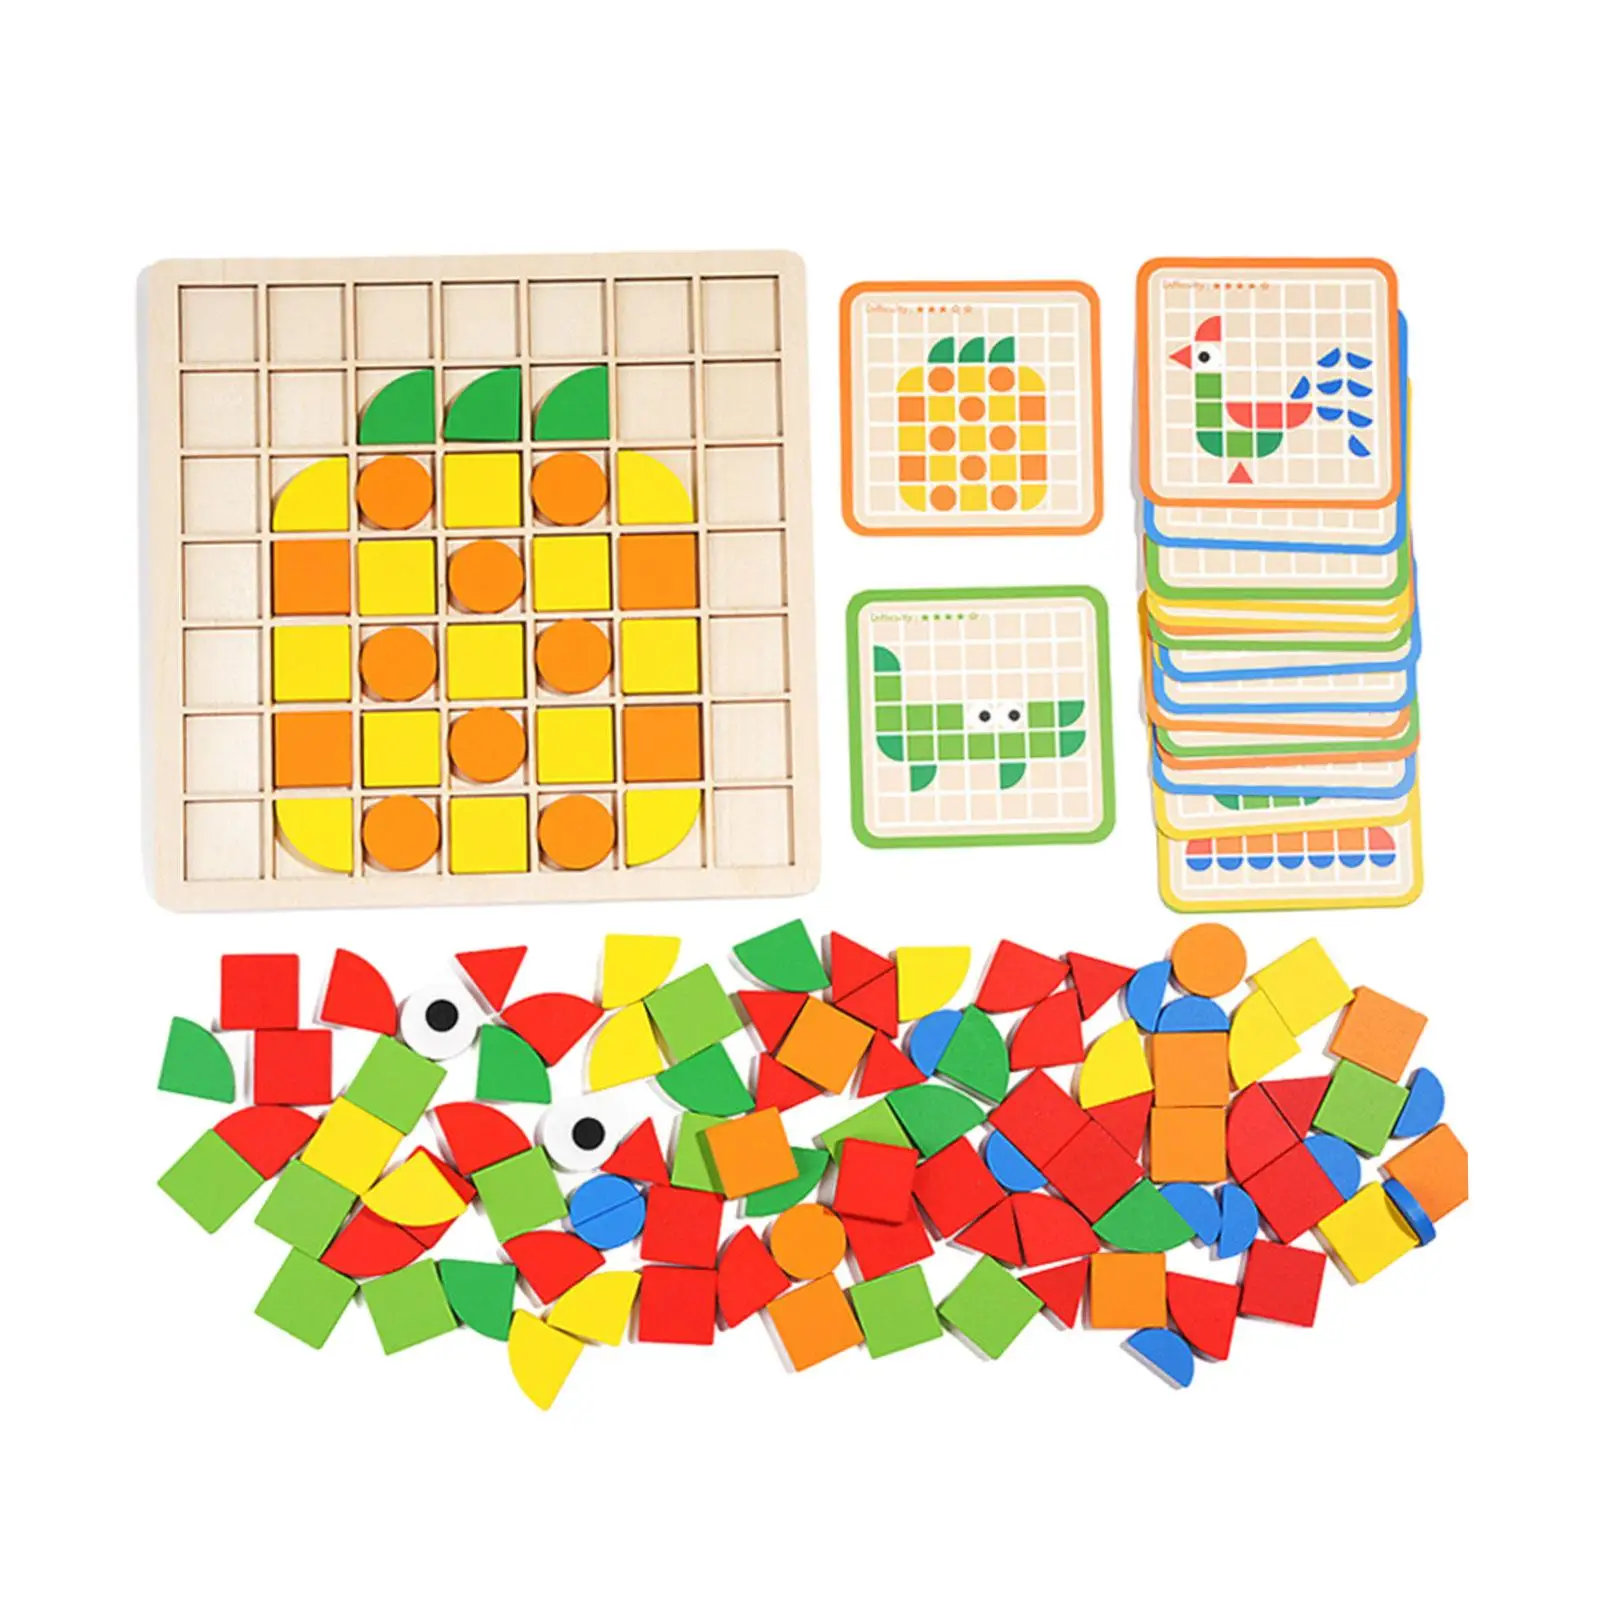 미취학 아동용 나무 탱그램 퍼즐, 색상 모양 분류, 기하학적 모양 직소 퍼즐, 어린이 선물